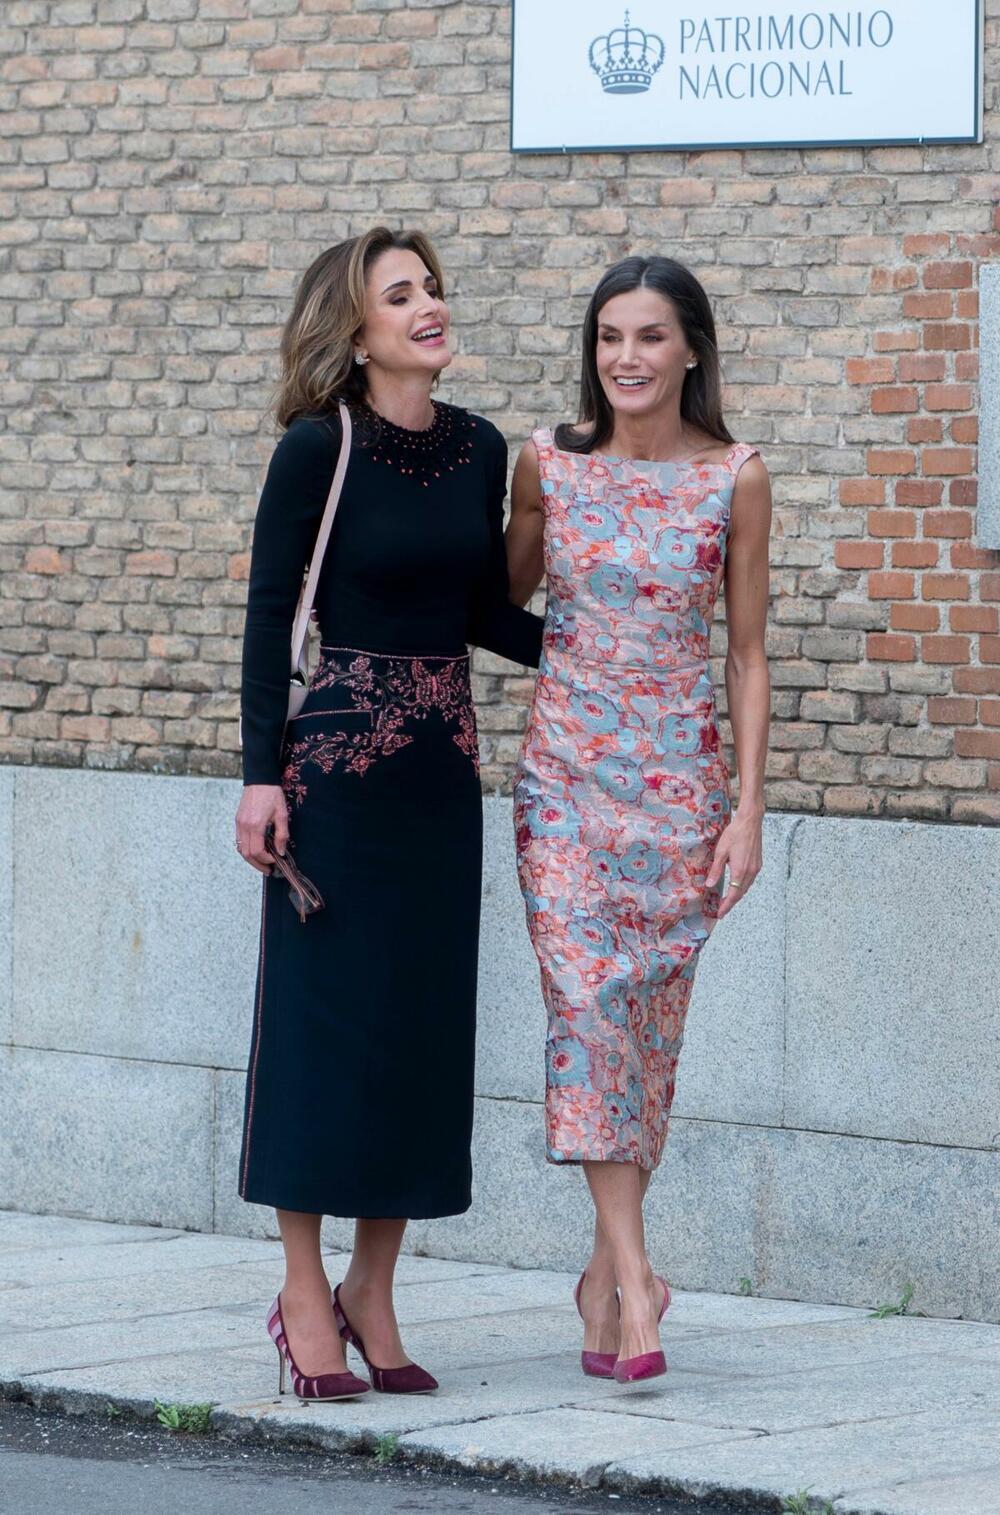 Kraljica Leticija i kraljica Ranija su kraljice, ali i iskrene prijateljice 